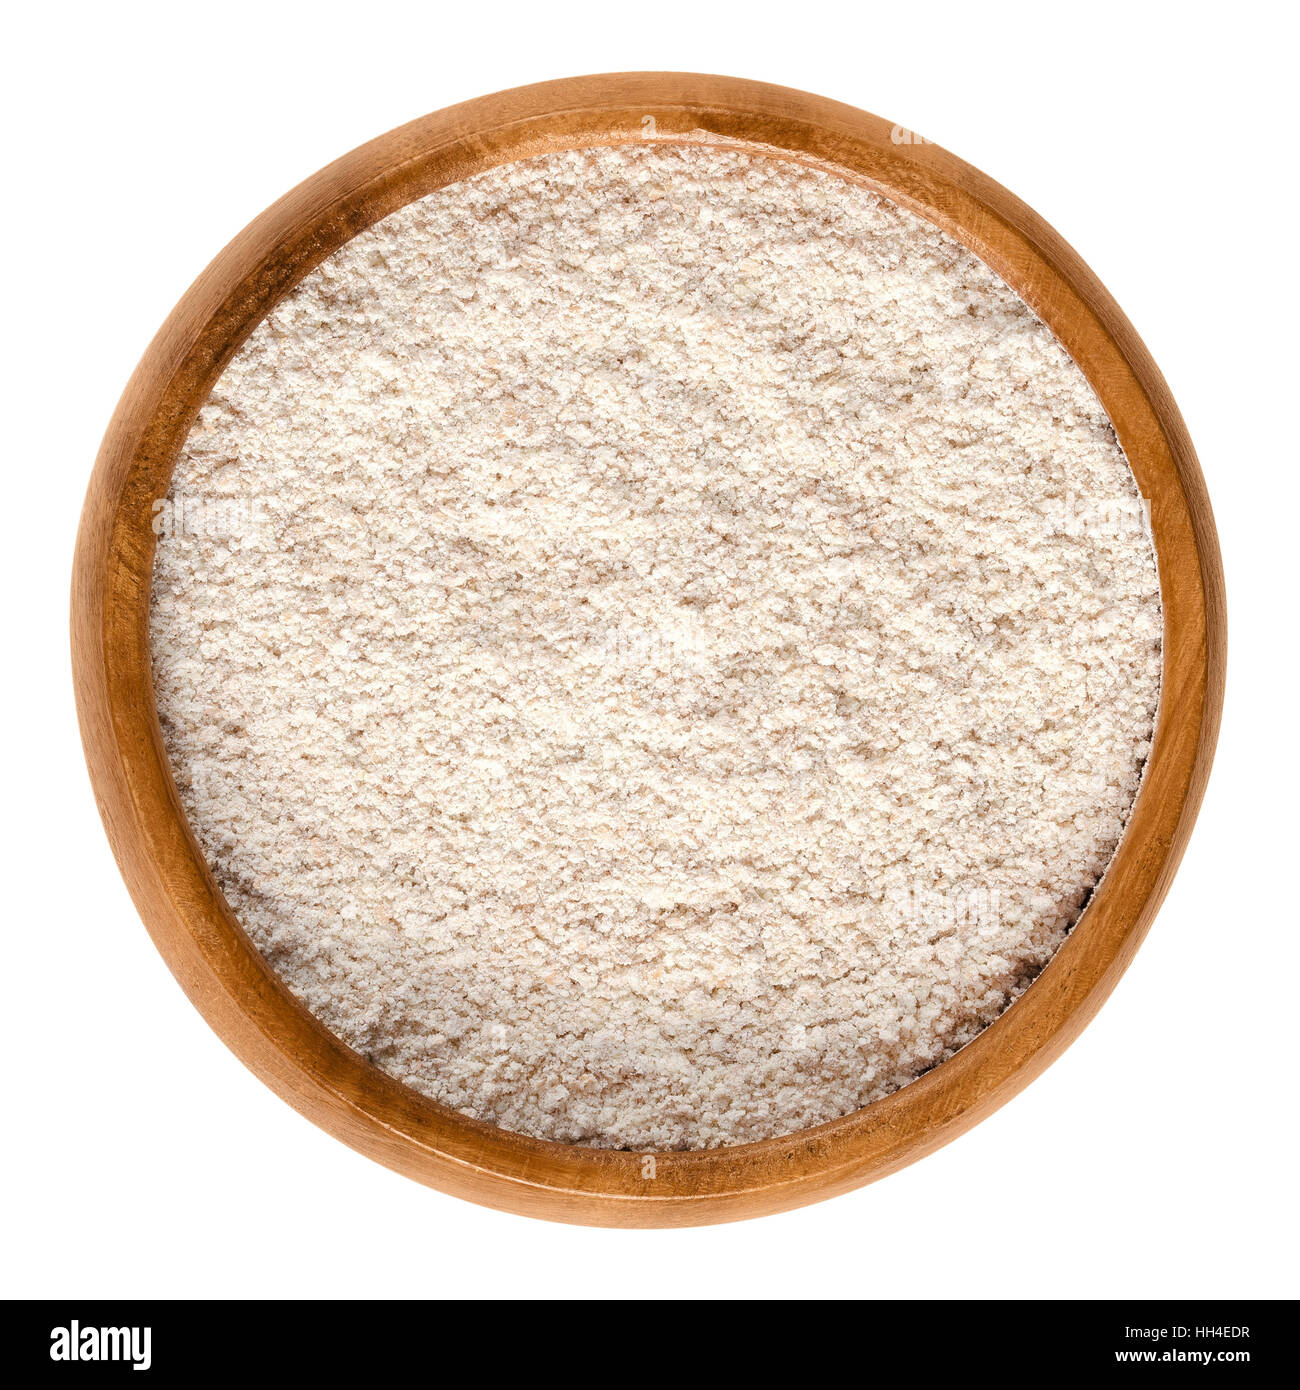 Farine de blé à bol en bois. Farine complète, une substance poudreuse de base et de l'ingrédient alimentaire, faite par la mouture de grains entiers. Banque D'Images